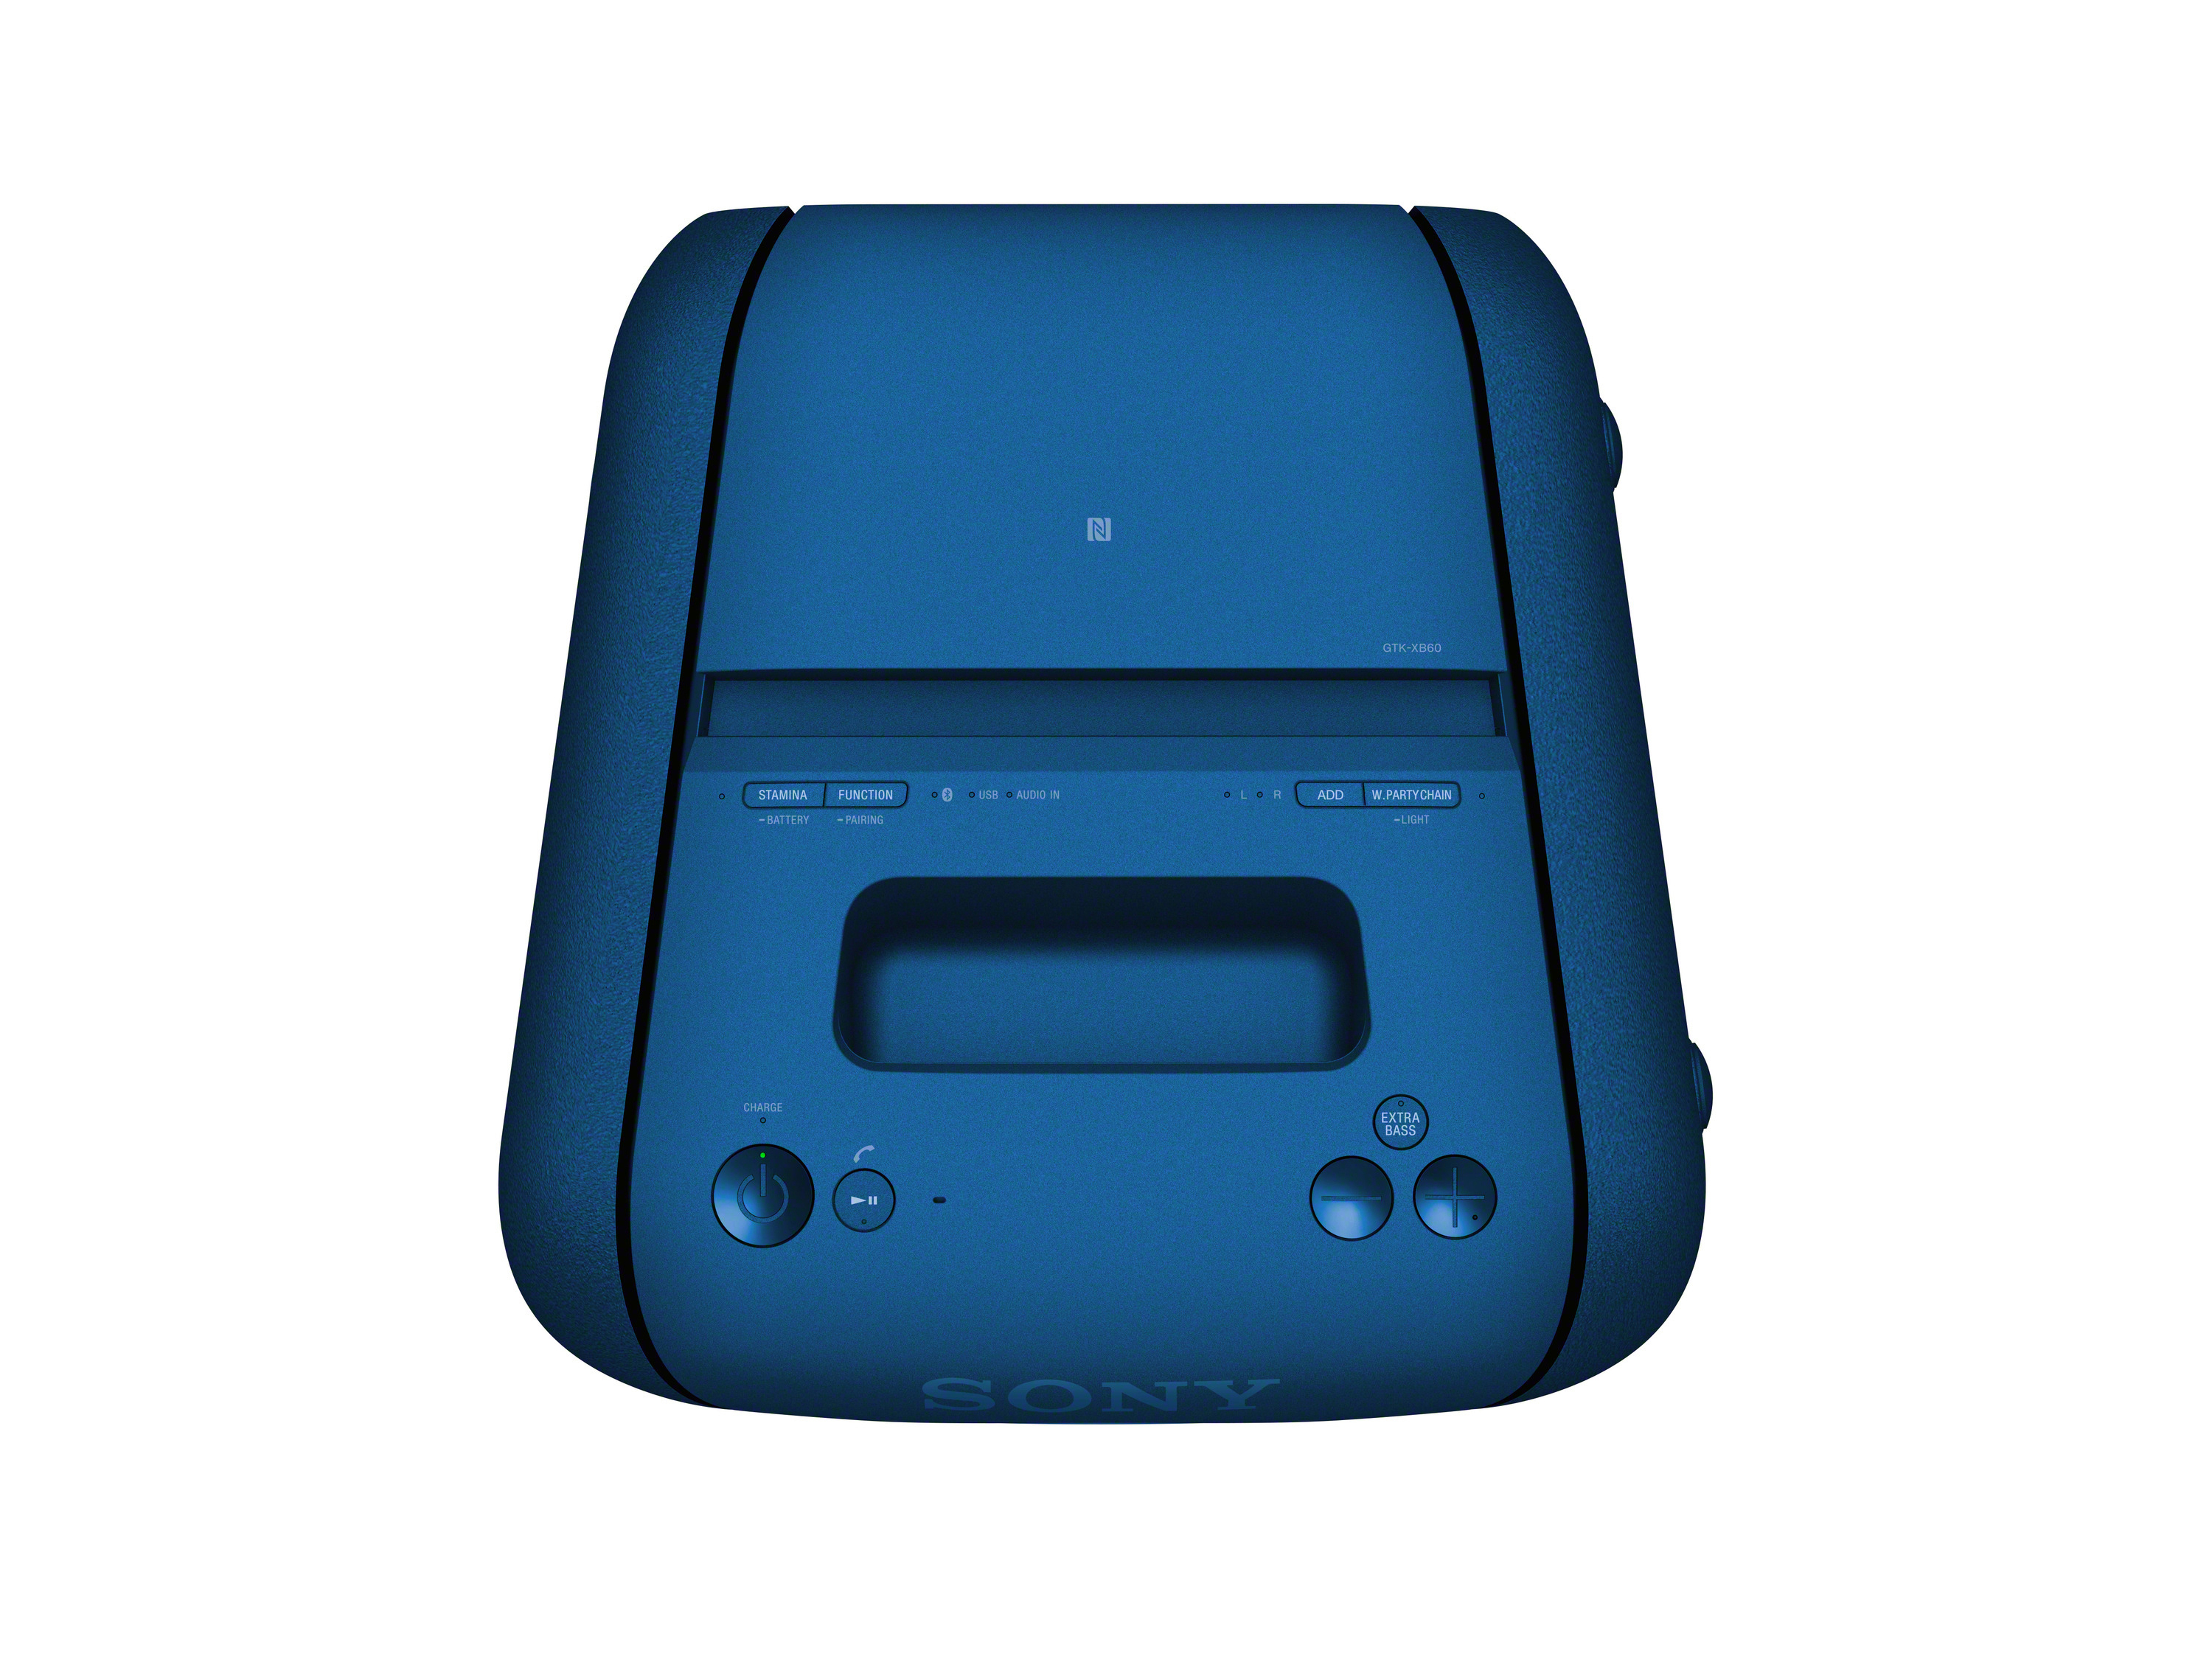 SONY GTK-XB60 Wireless Party Bluetooth Blau Lautsprecher, Chain